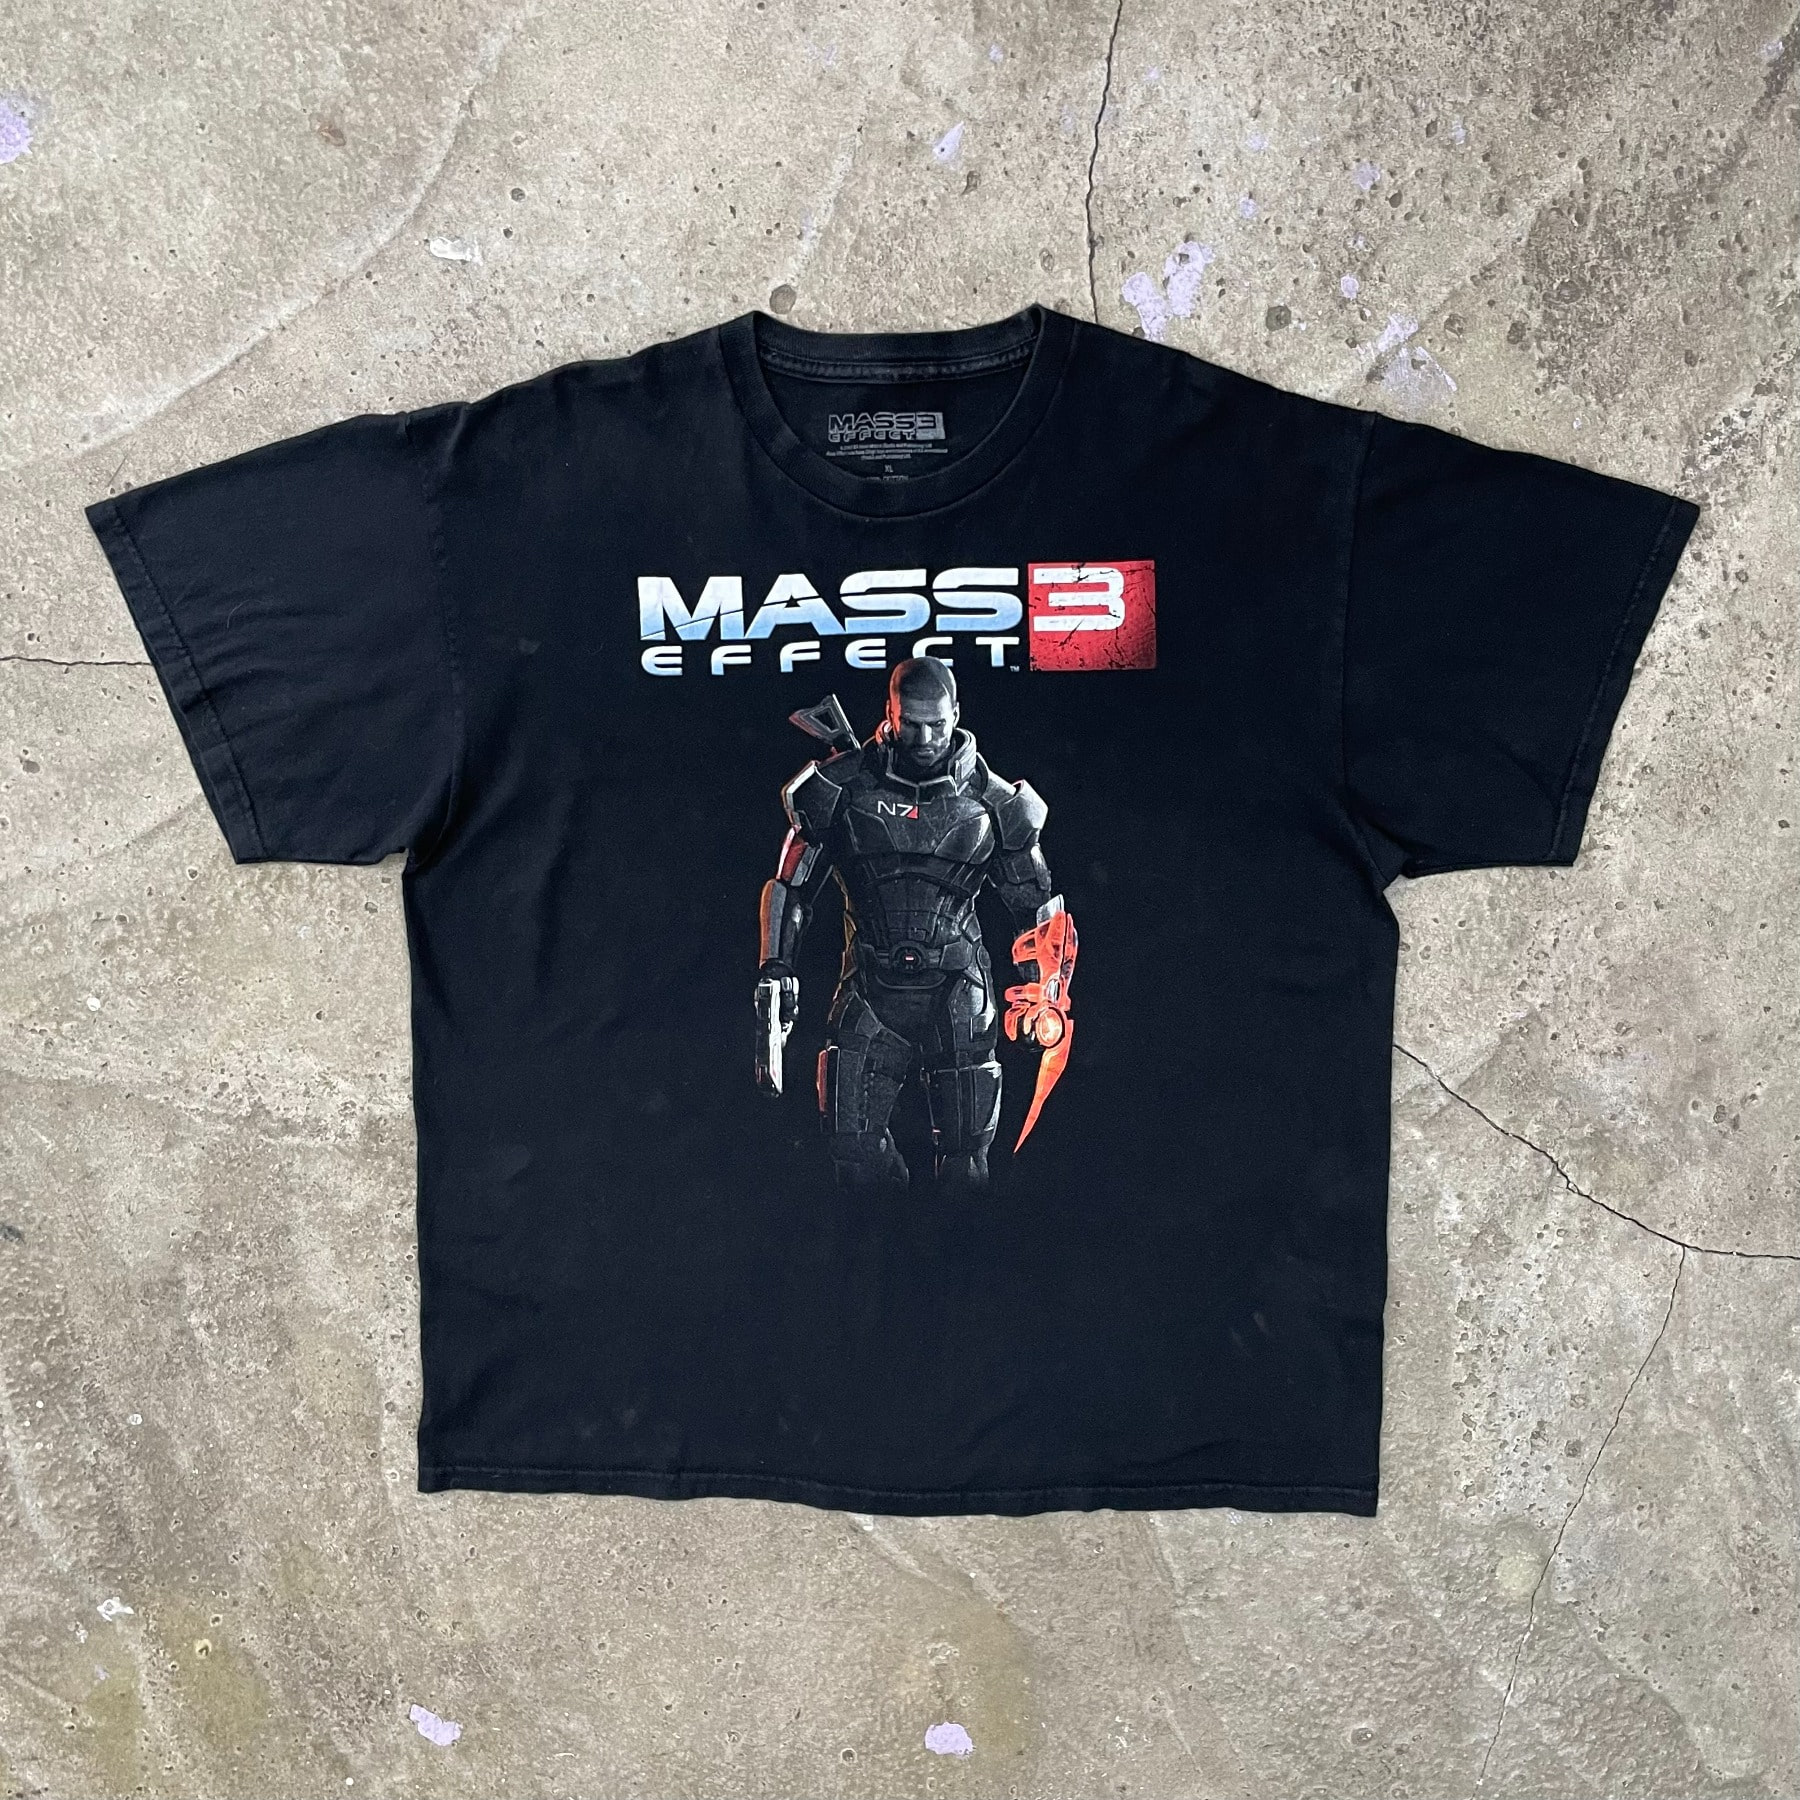 2012 Mass Effect 3 Tee - XL